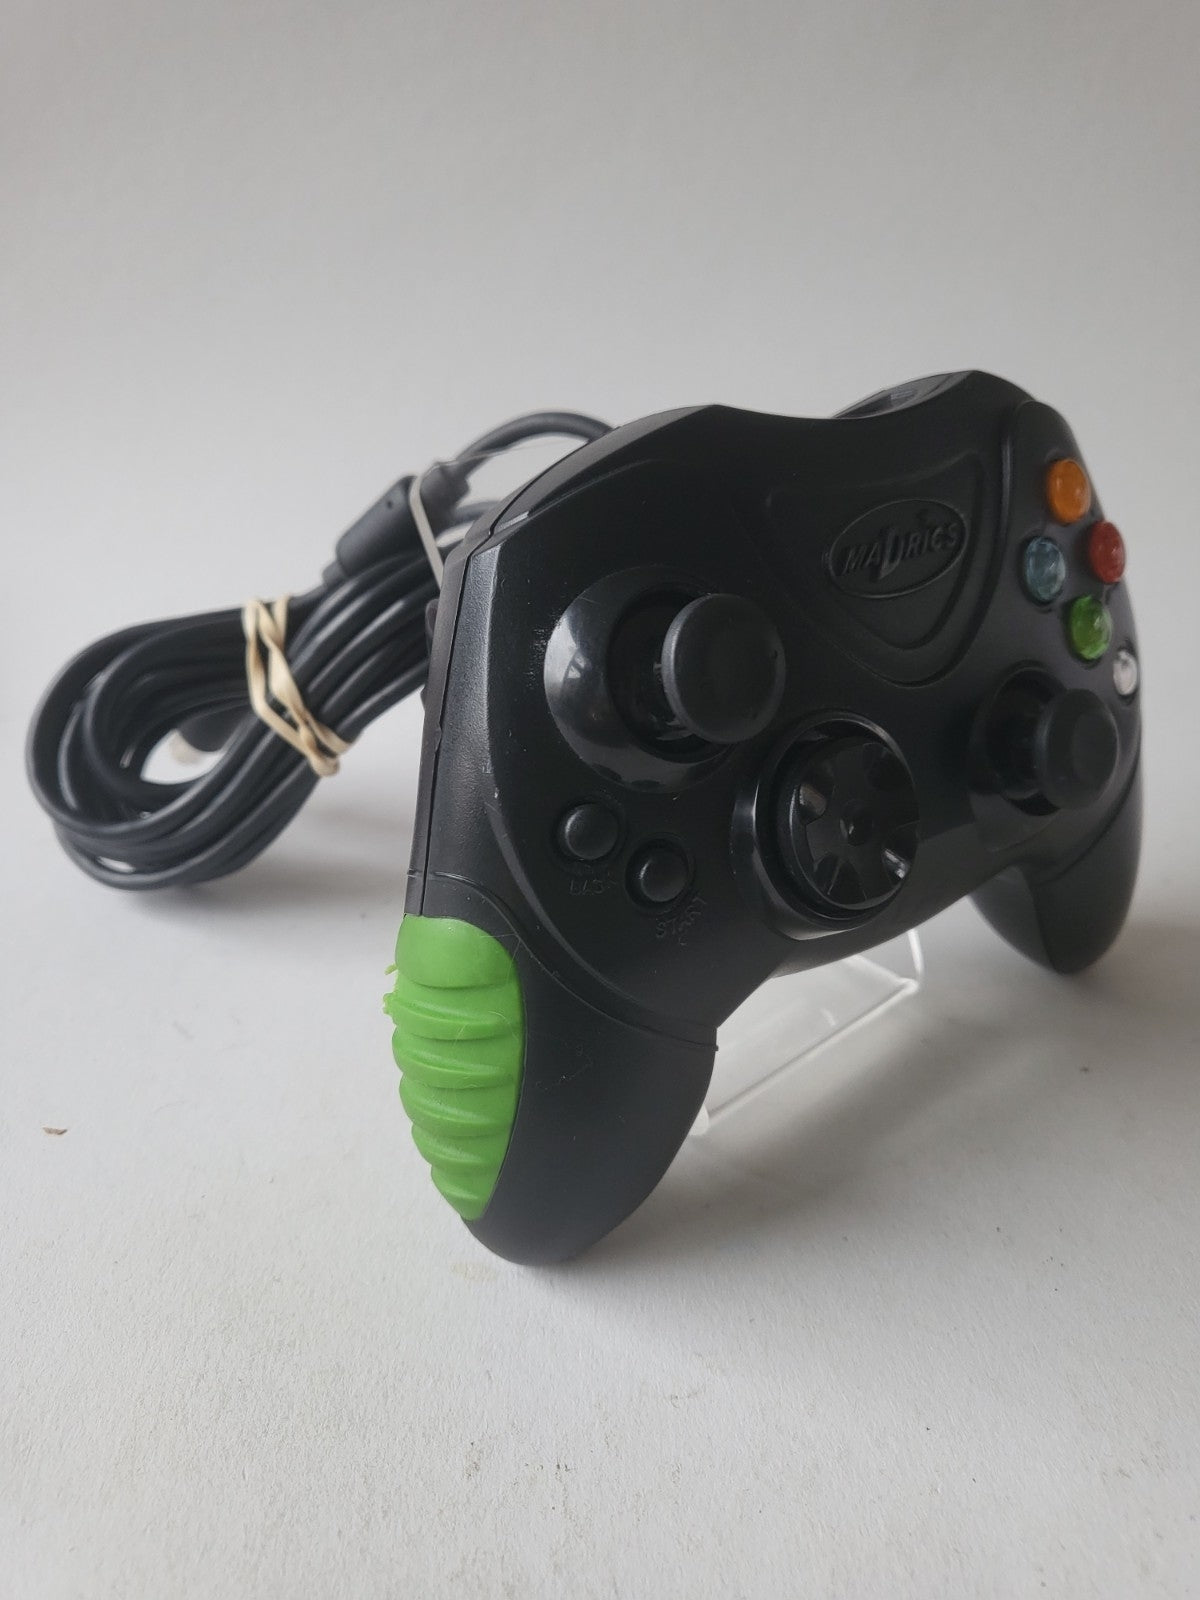 Madrics Xbox Original Controller